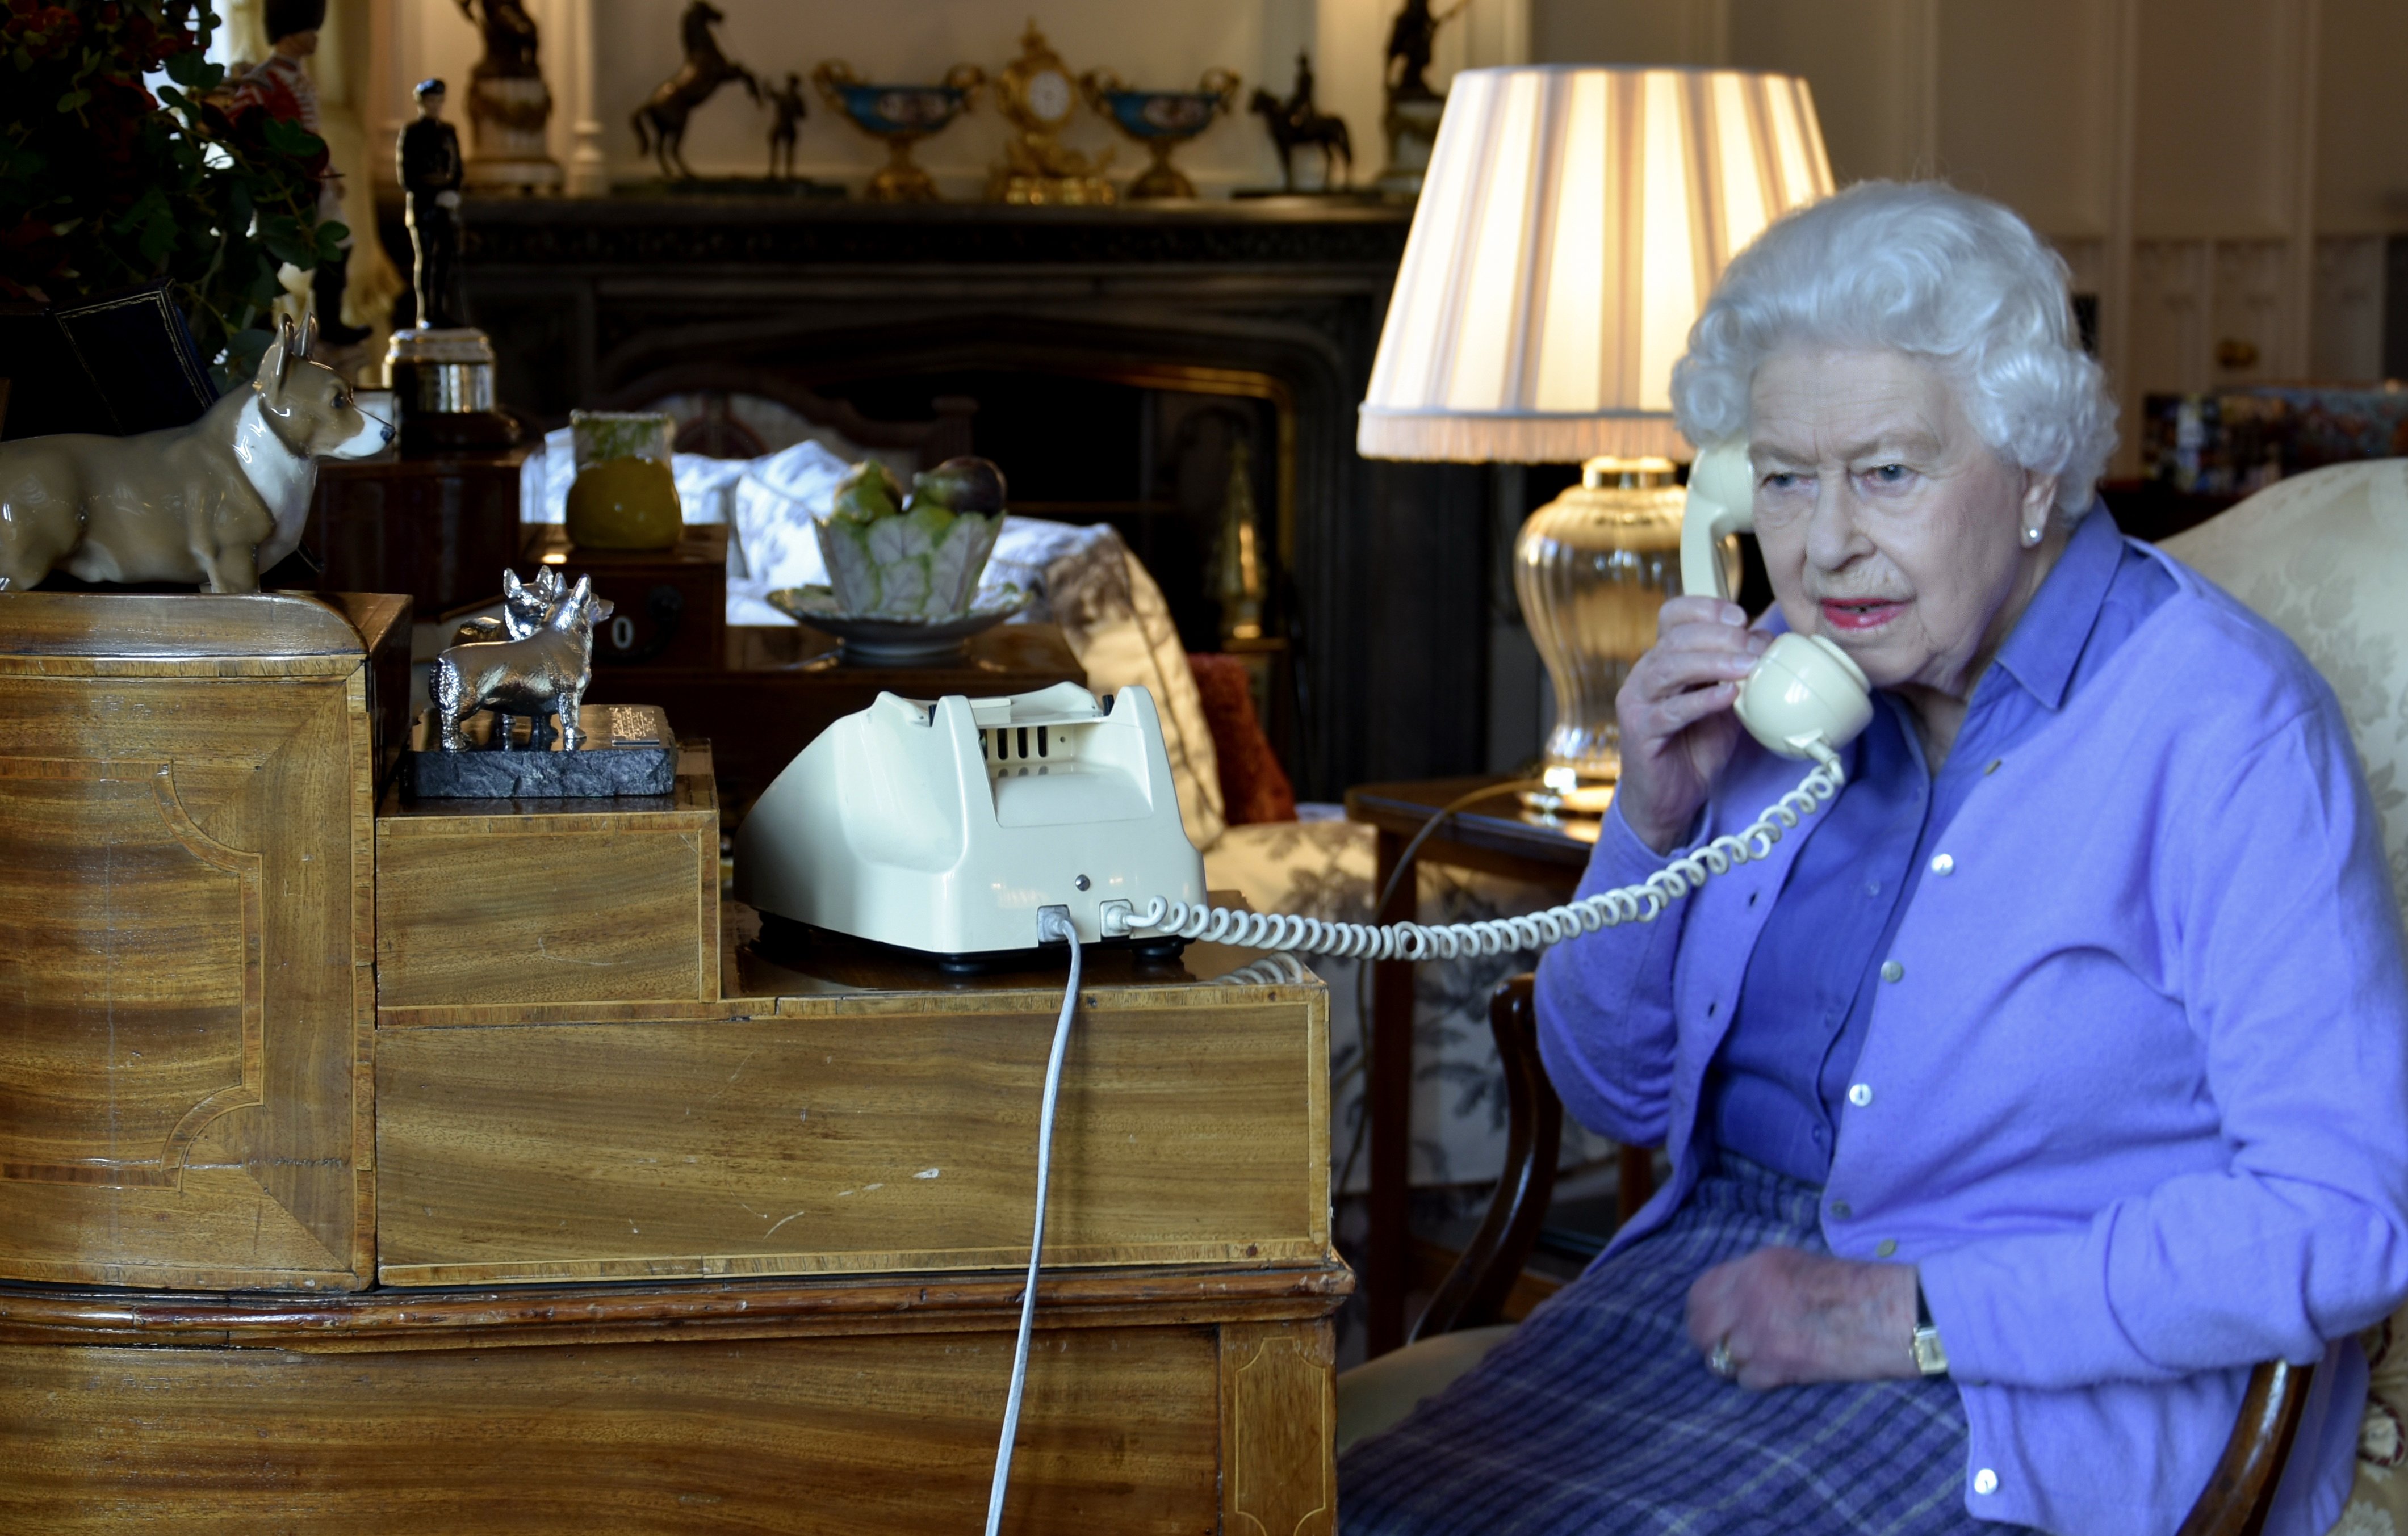 La reina Elizabeth II habla con el primer ministro Boris Johnson desde el Castillo de Windsor para su audiencia semanal el 25 de marzo de 2020 en Windsor, Inglaterra. | Foto: Getty Images